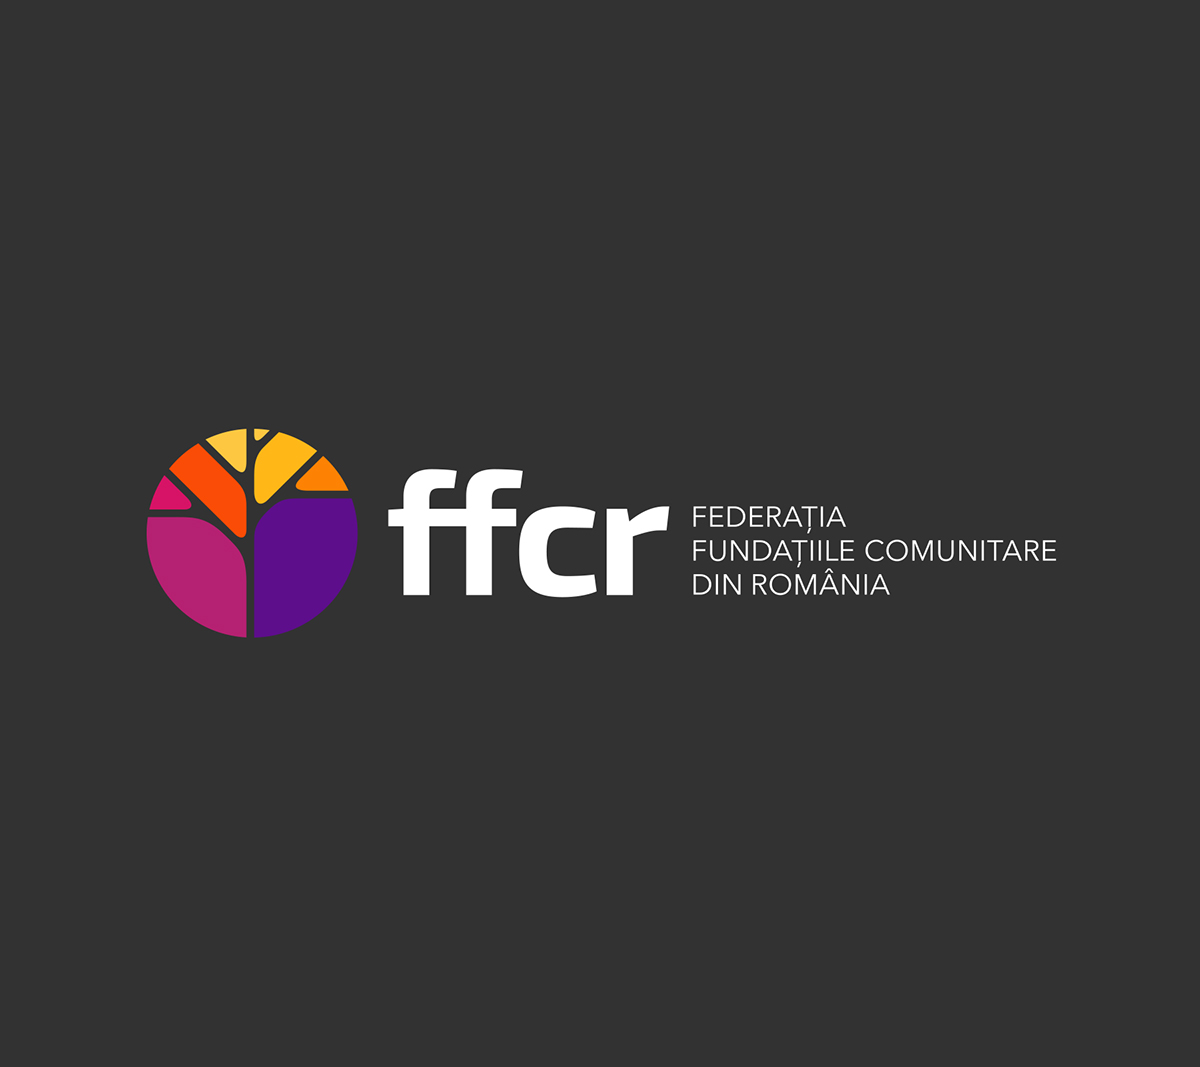 FFCR foundation community foundation community interactive design